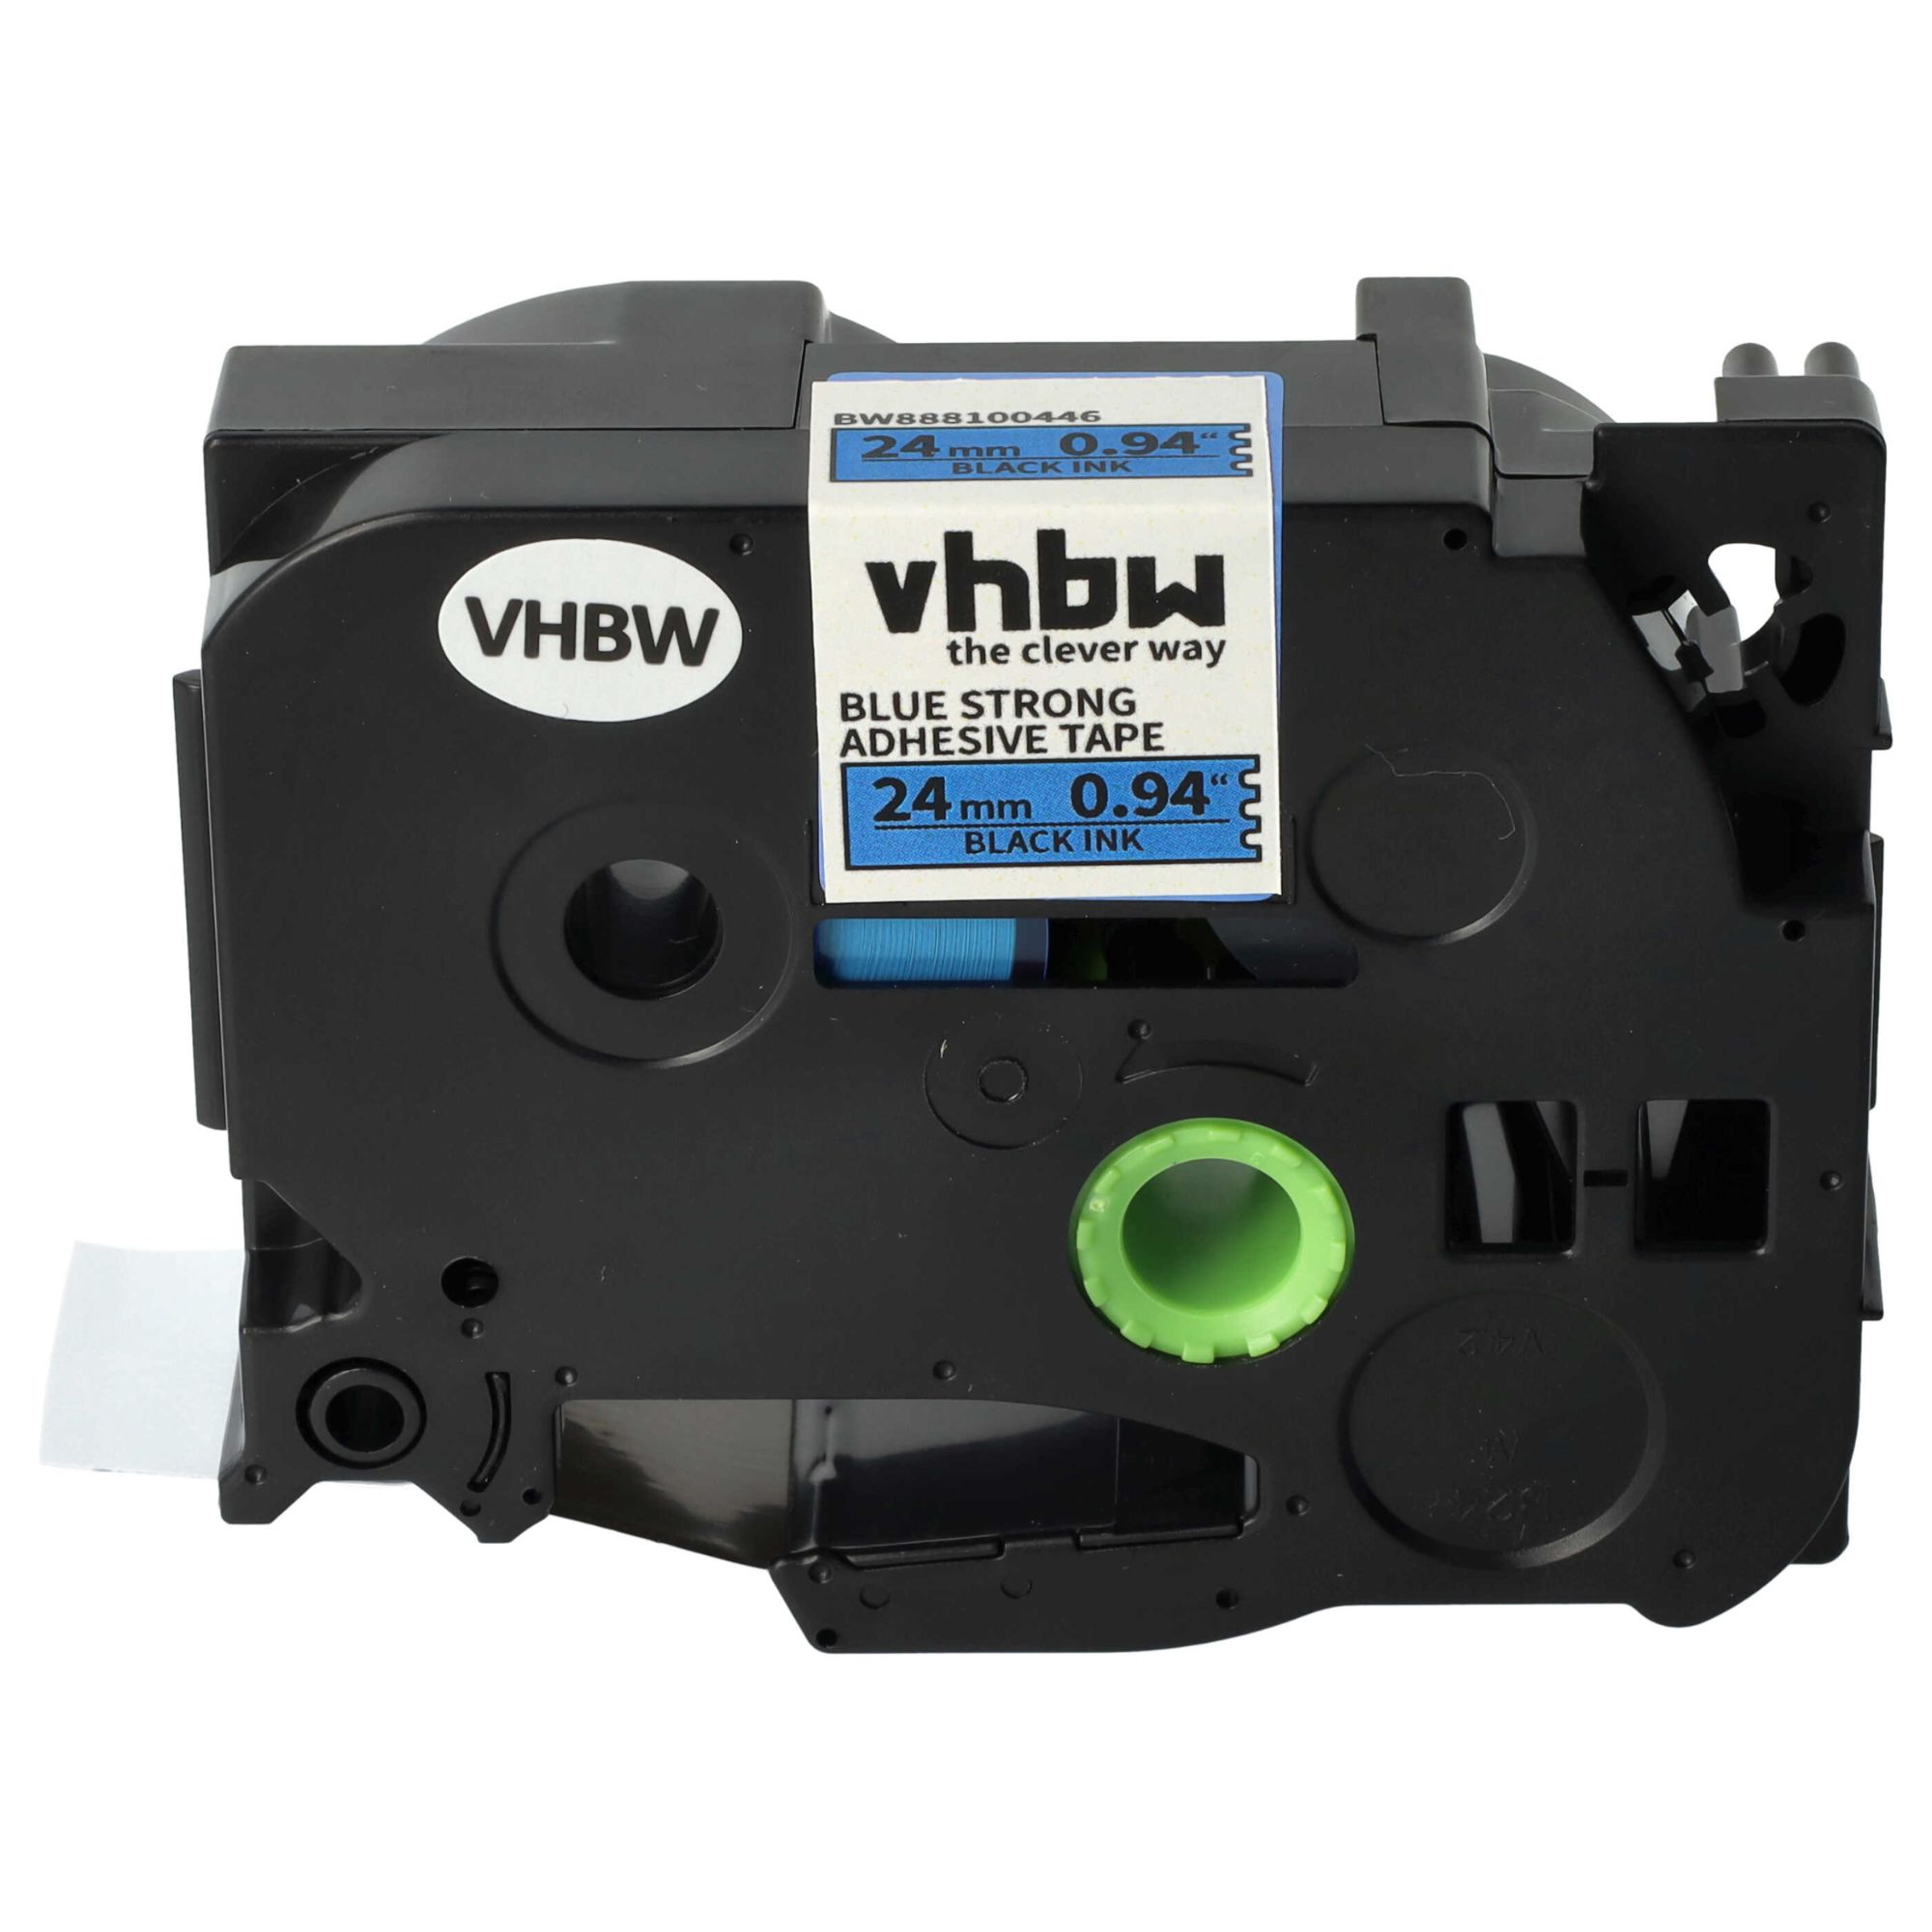 vhbw 1x Ruban compatible avec Brother PT P750TDI, P900W, P750W, P900, P900NW imprimante d'étiquettes 24mm Noir sur Bleu, extraforte